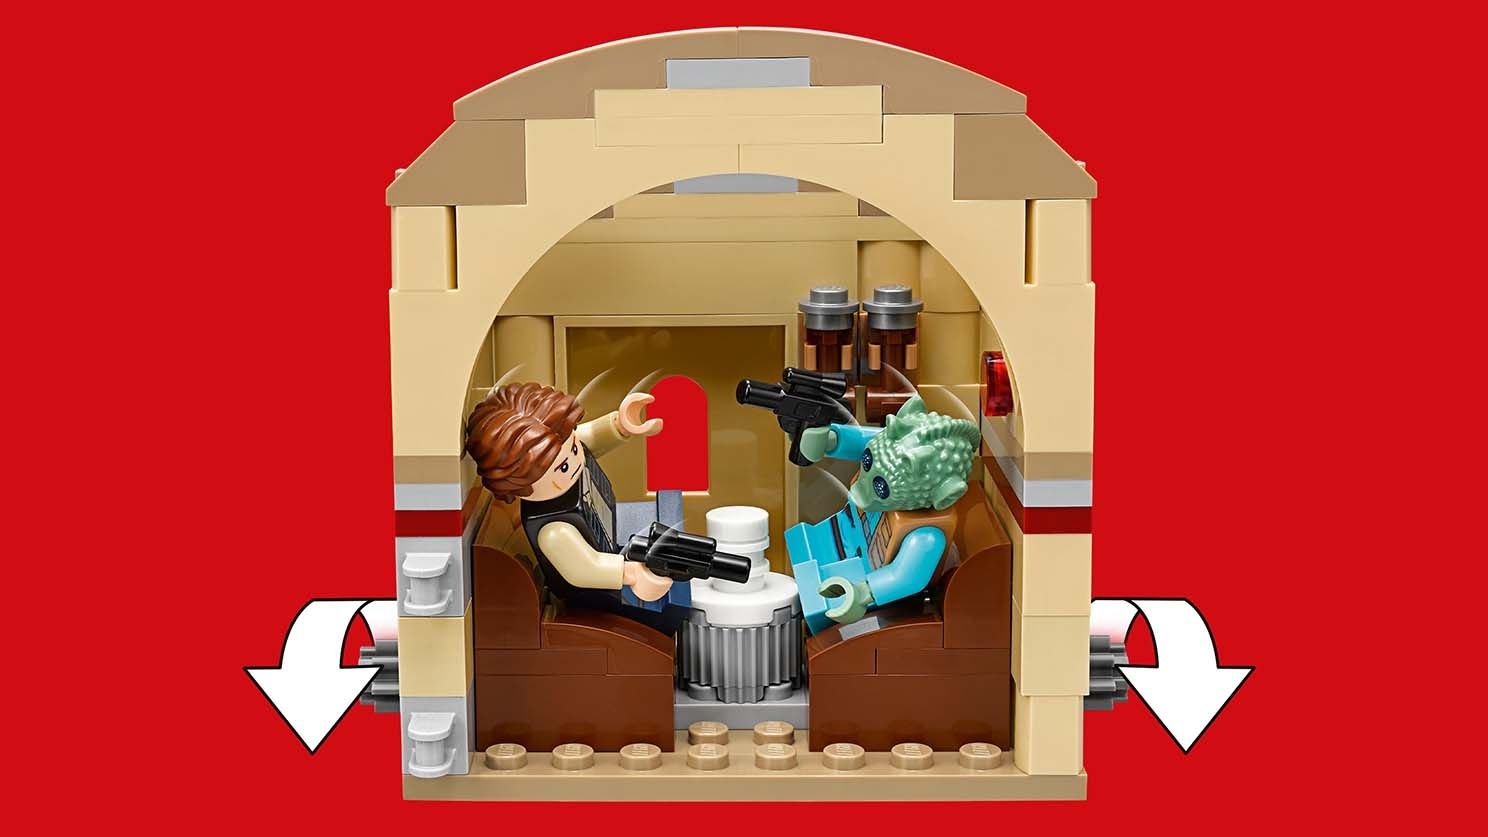 LEGO Star Wars 75205 Mos Eisley Cantina™ LEGO_75205_WEB_SEC04_1488.jpg